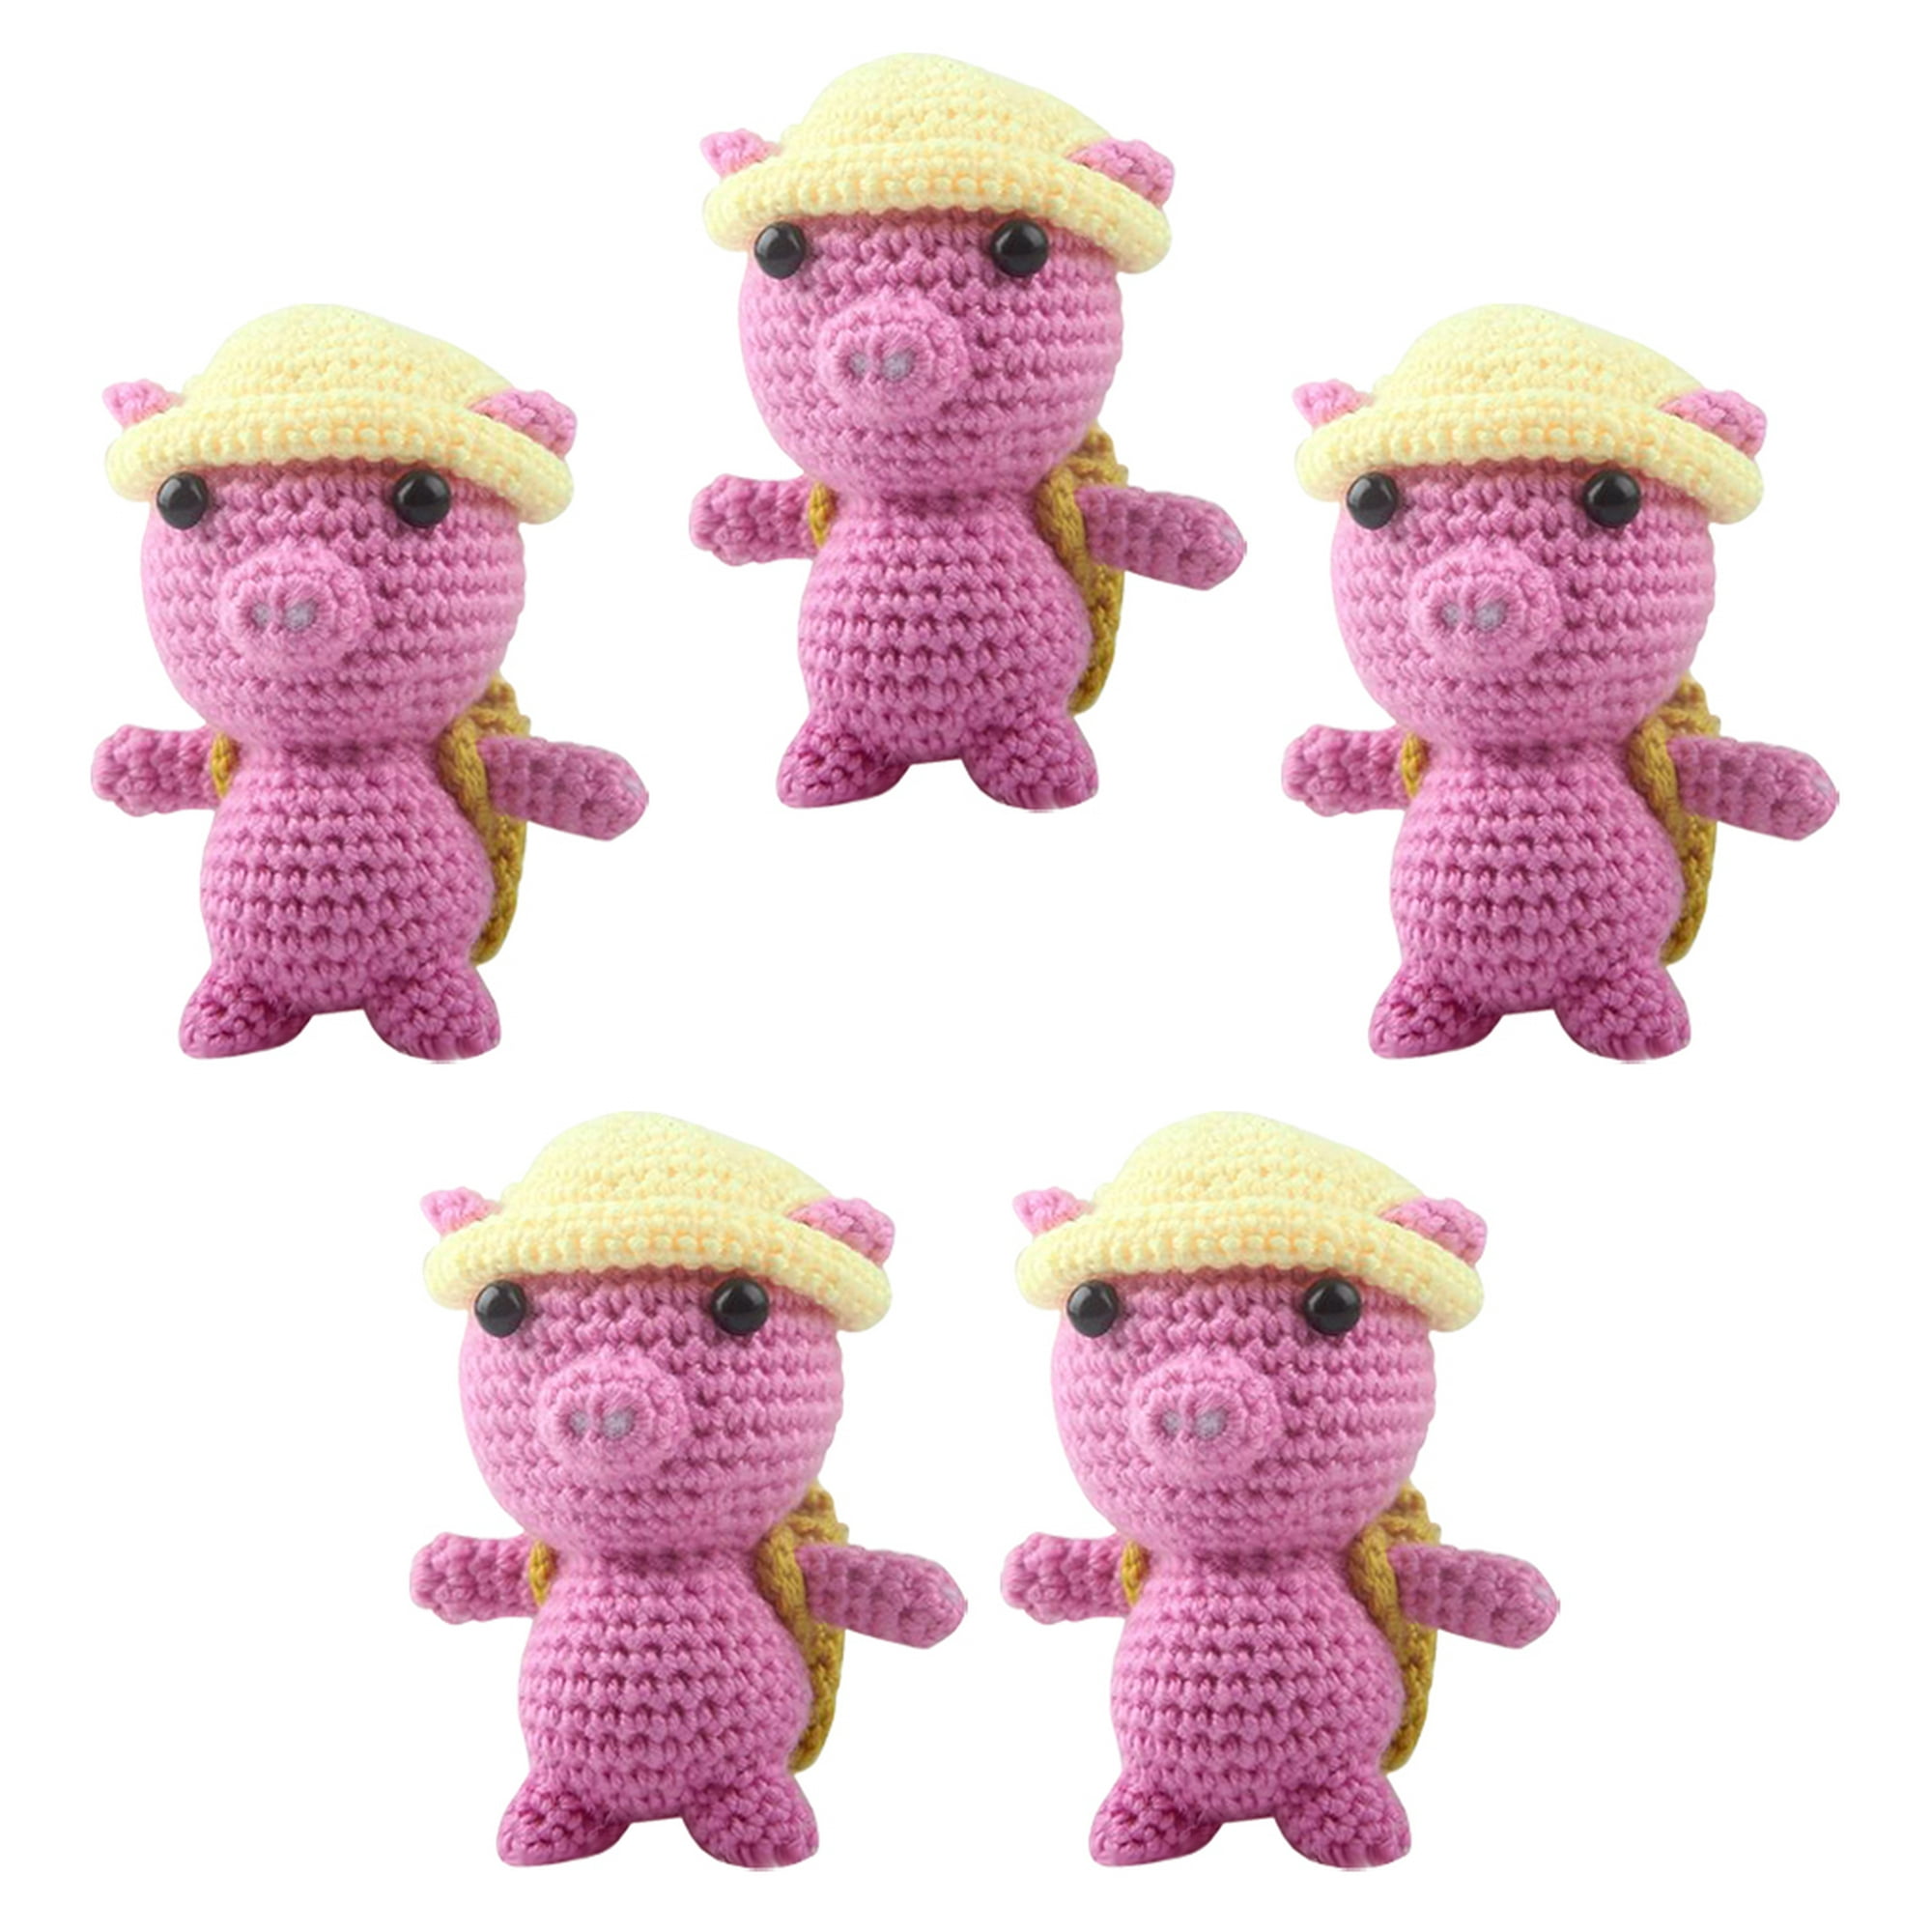 Kit De Crochet Principiantes, 3 Patrones De Animales (b